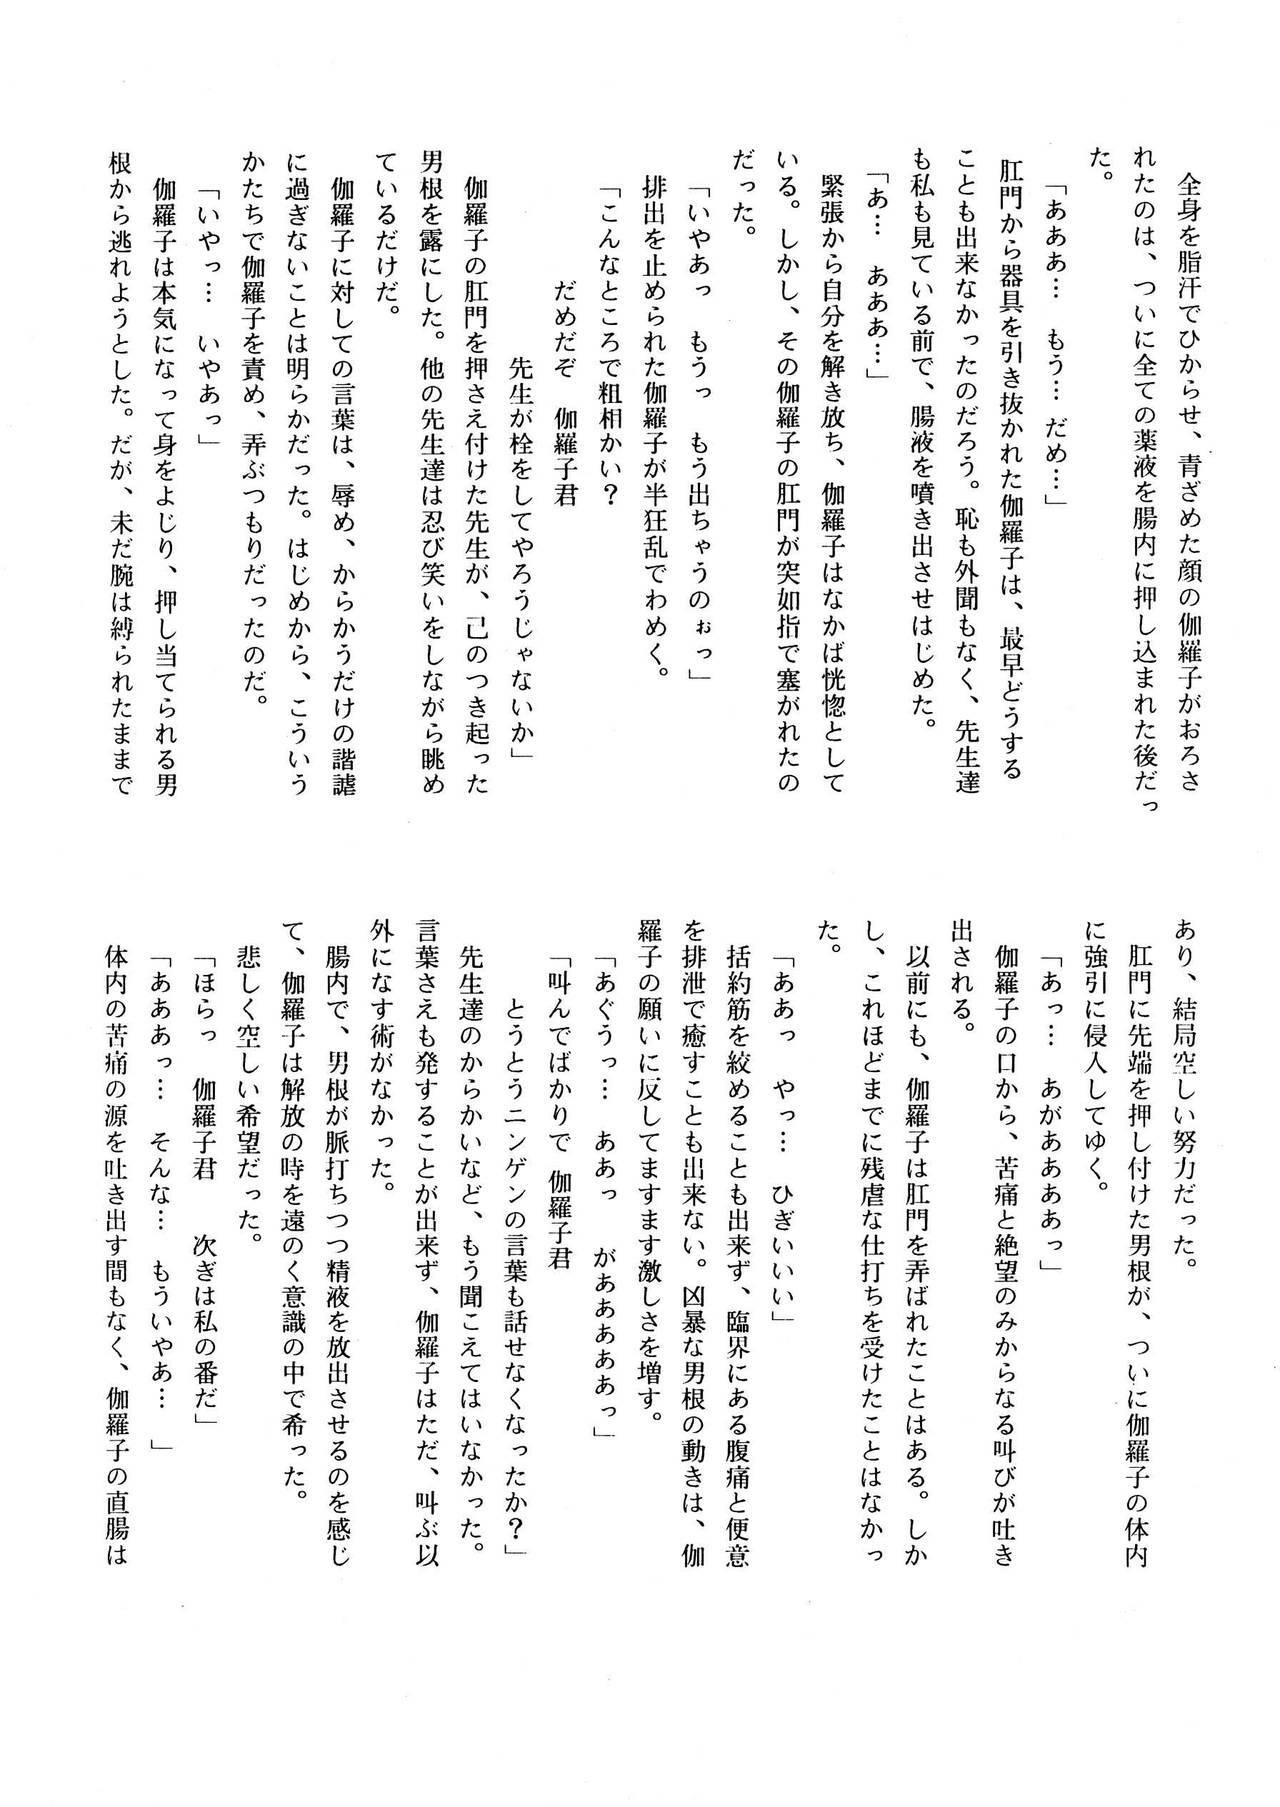 [菊花酒楼 (菊水)] Celestial page 34 full